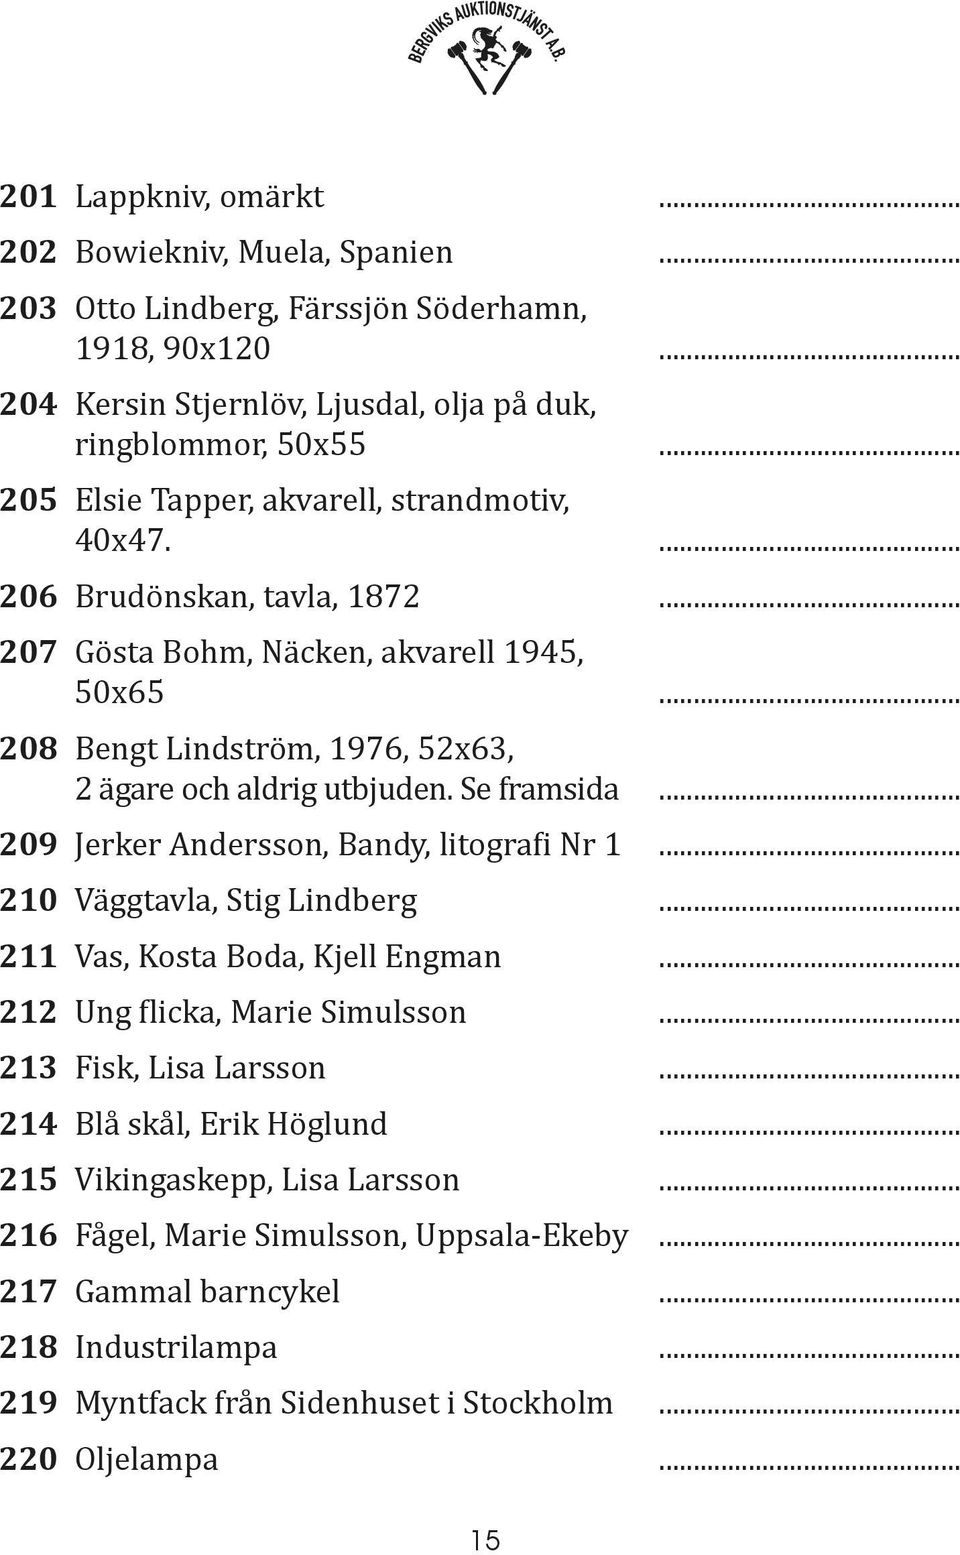 Se framsida... 209 Jerker Andersson, Bandy, litografi Nr 1... 210 Väggtavla, Stig Lindberg... 211 Vas, Kosta Boda, Kjell Engman... 212 Ung flicka, Marie Simulsson... 213 Fisk, Lisa Larsson.